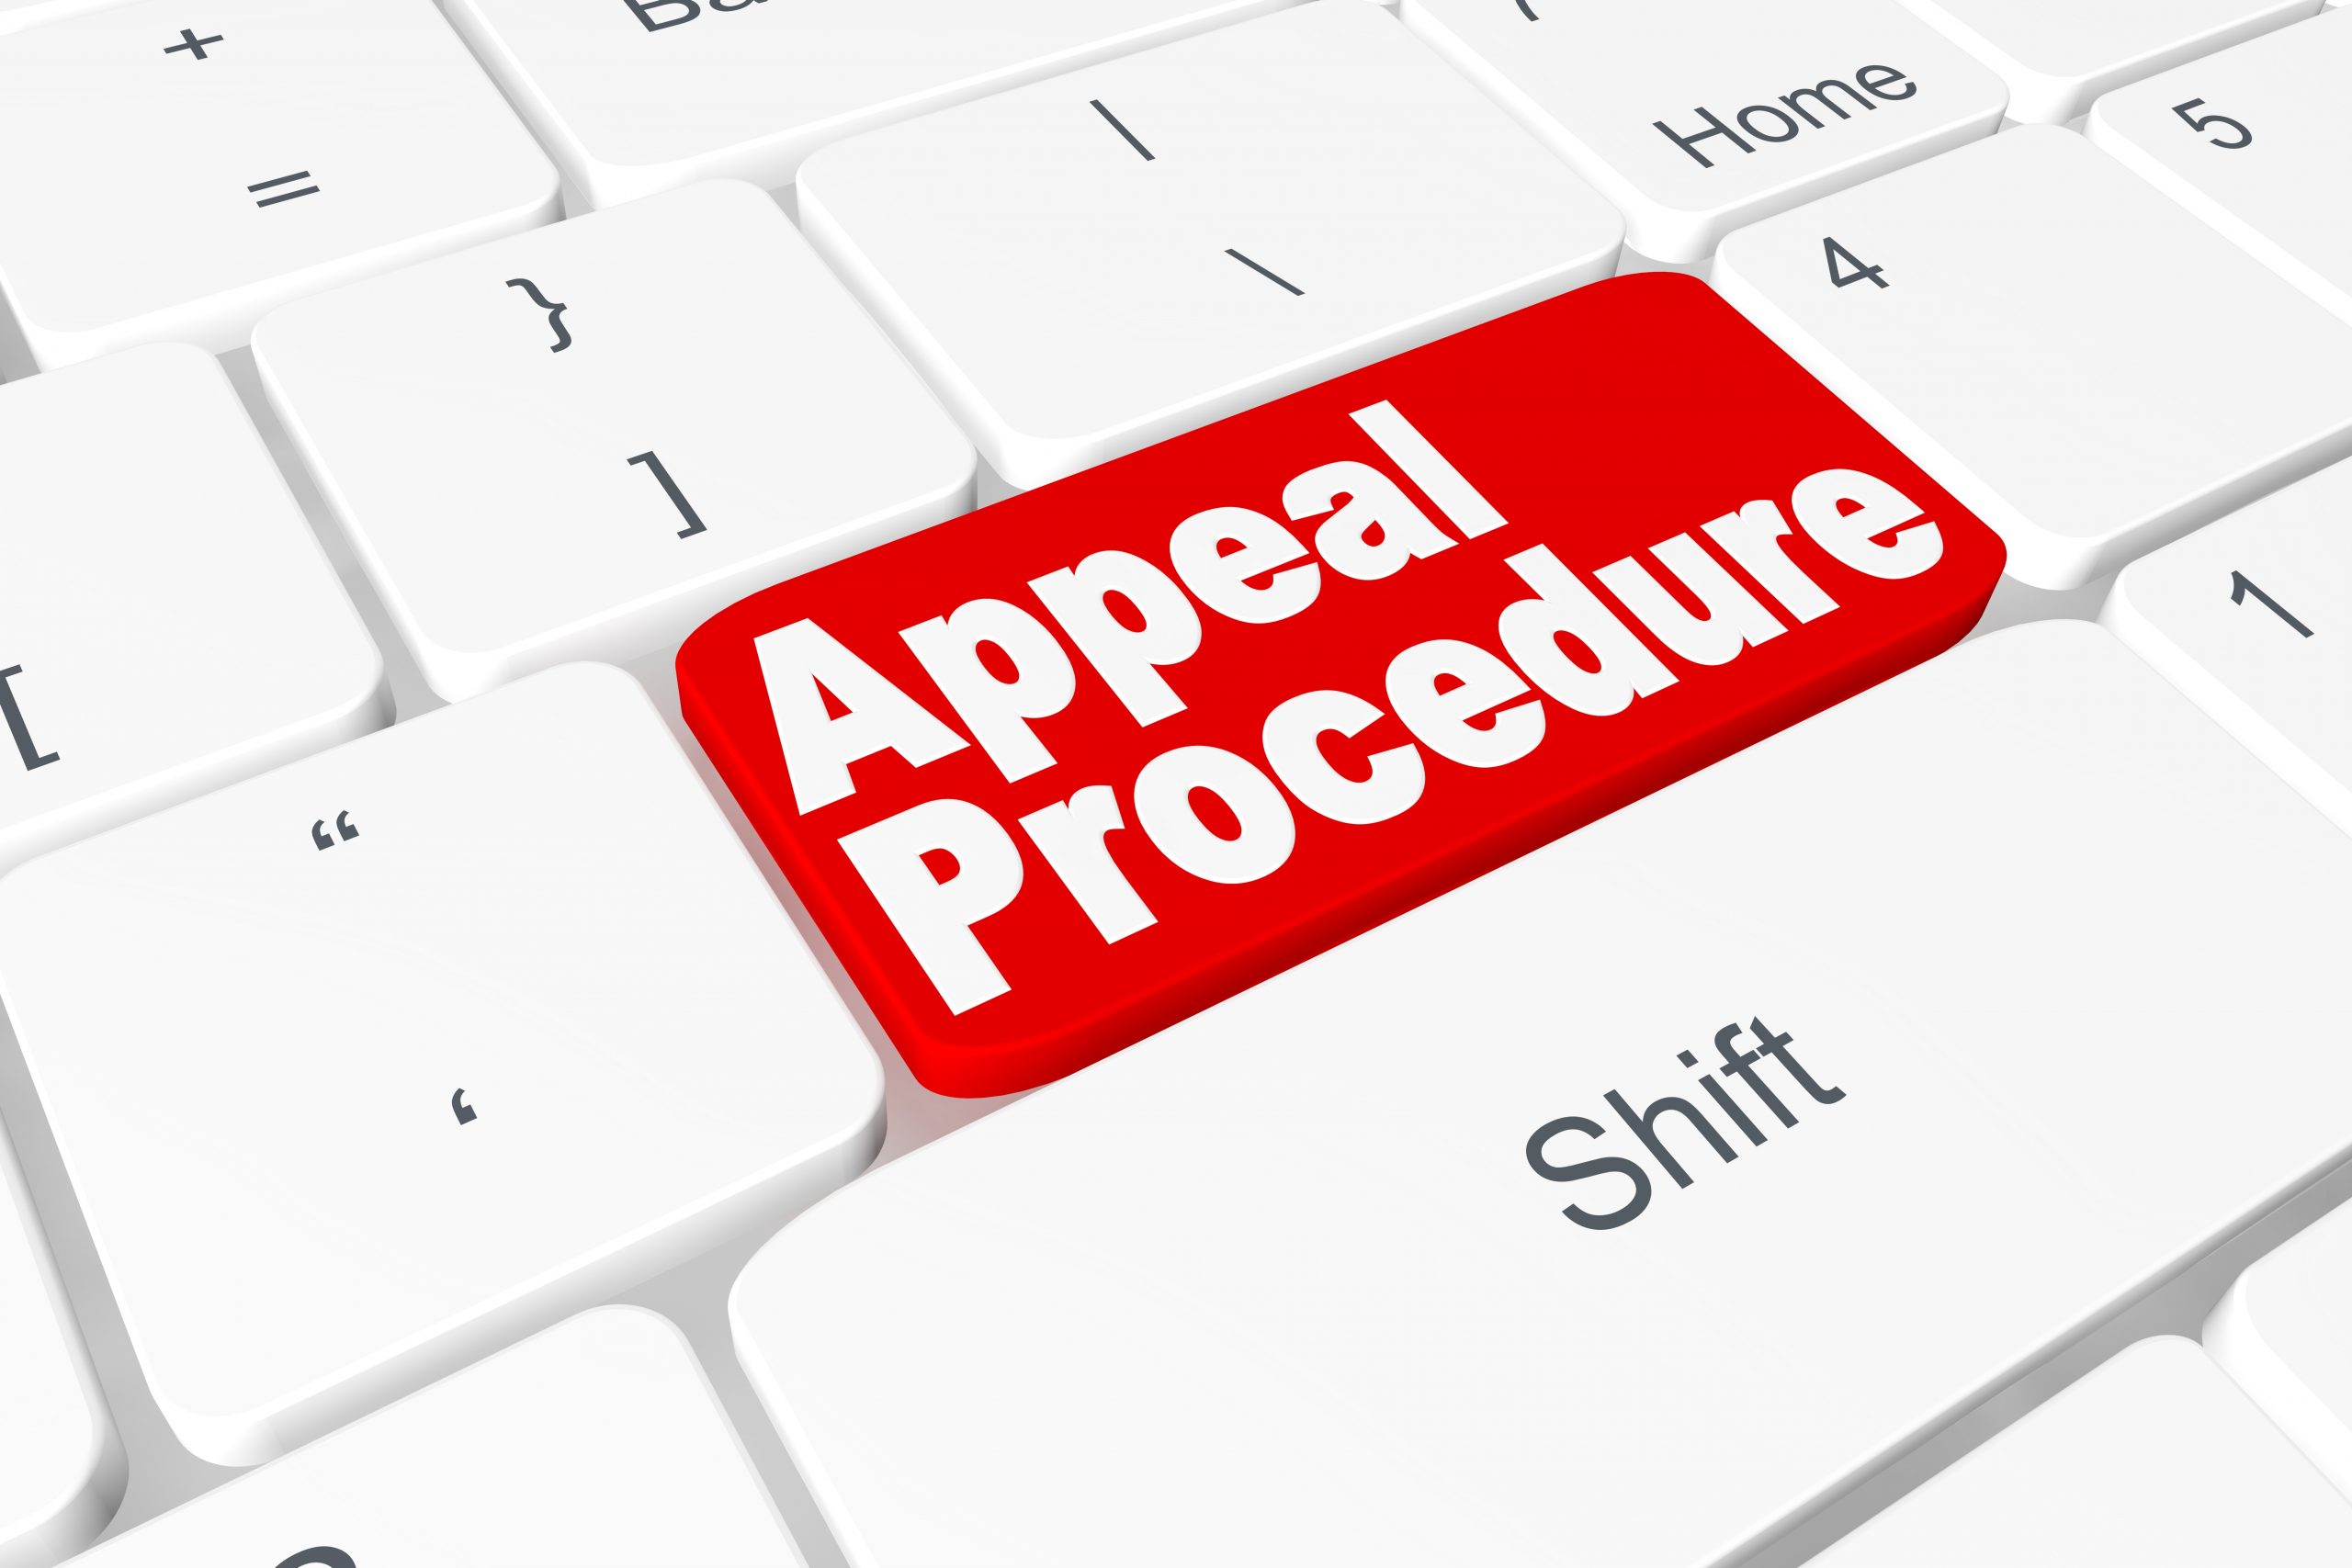 Button "Appeal procedure" on keyboard